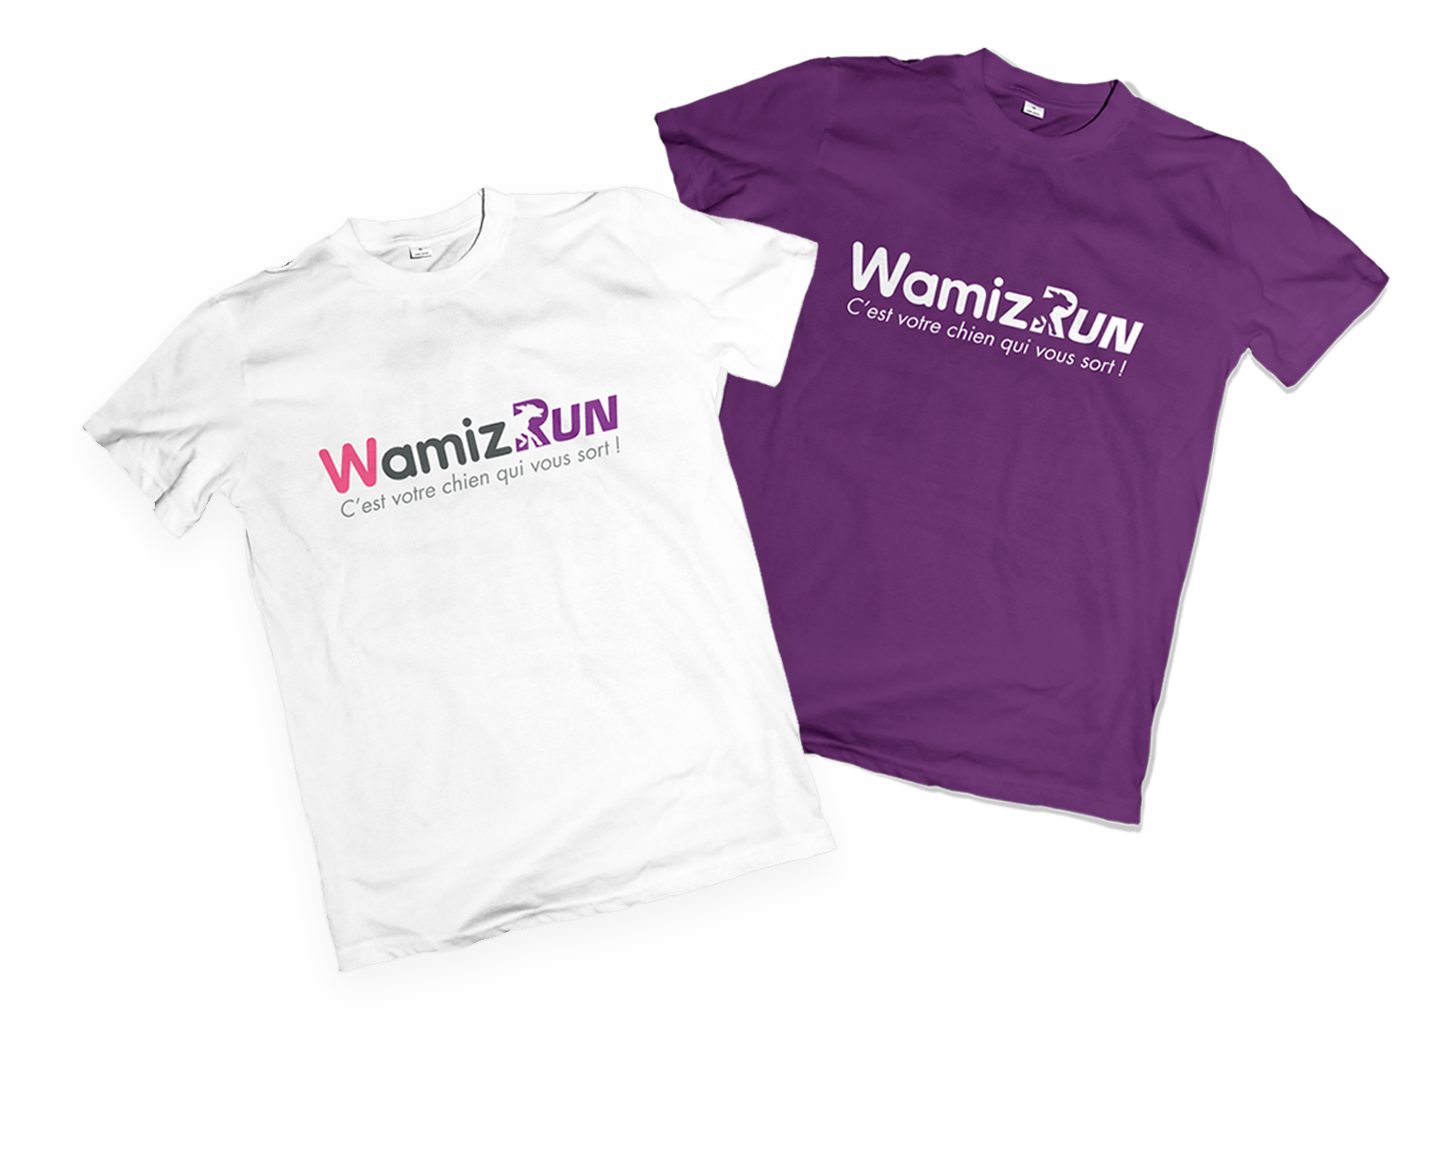 Wamiz Run t-shirts